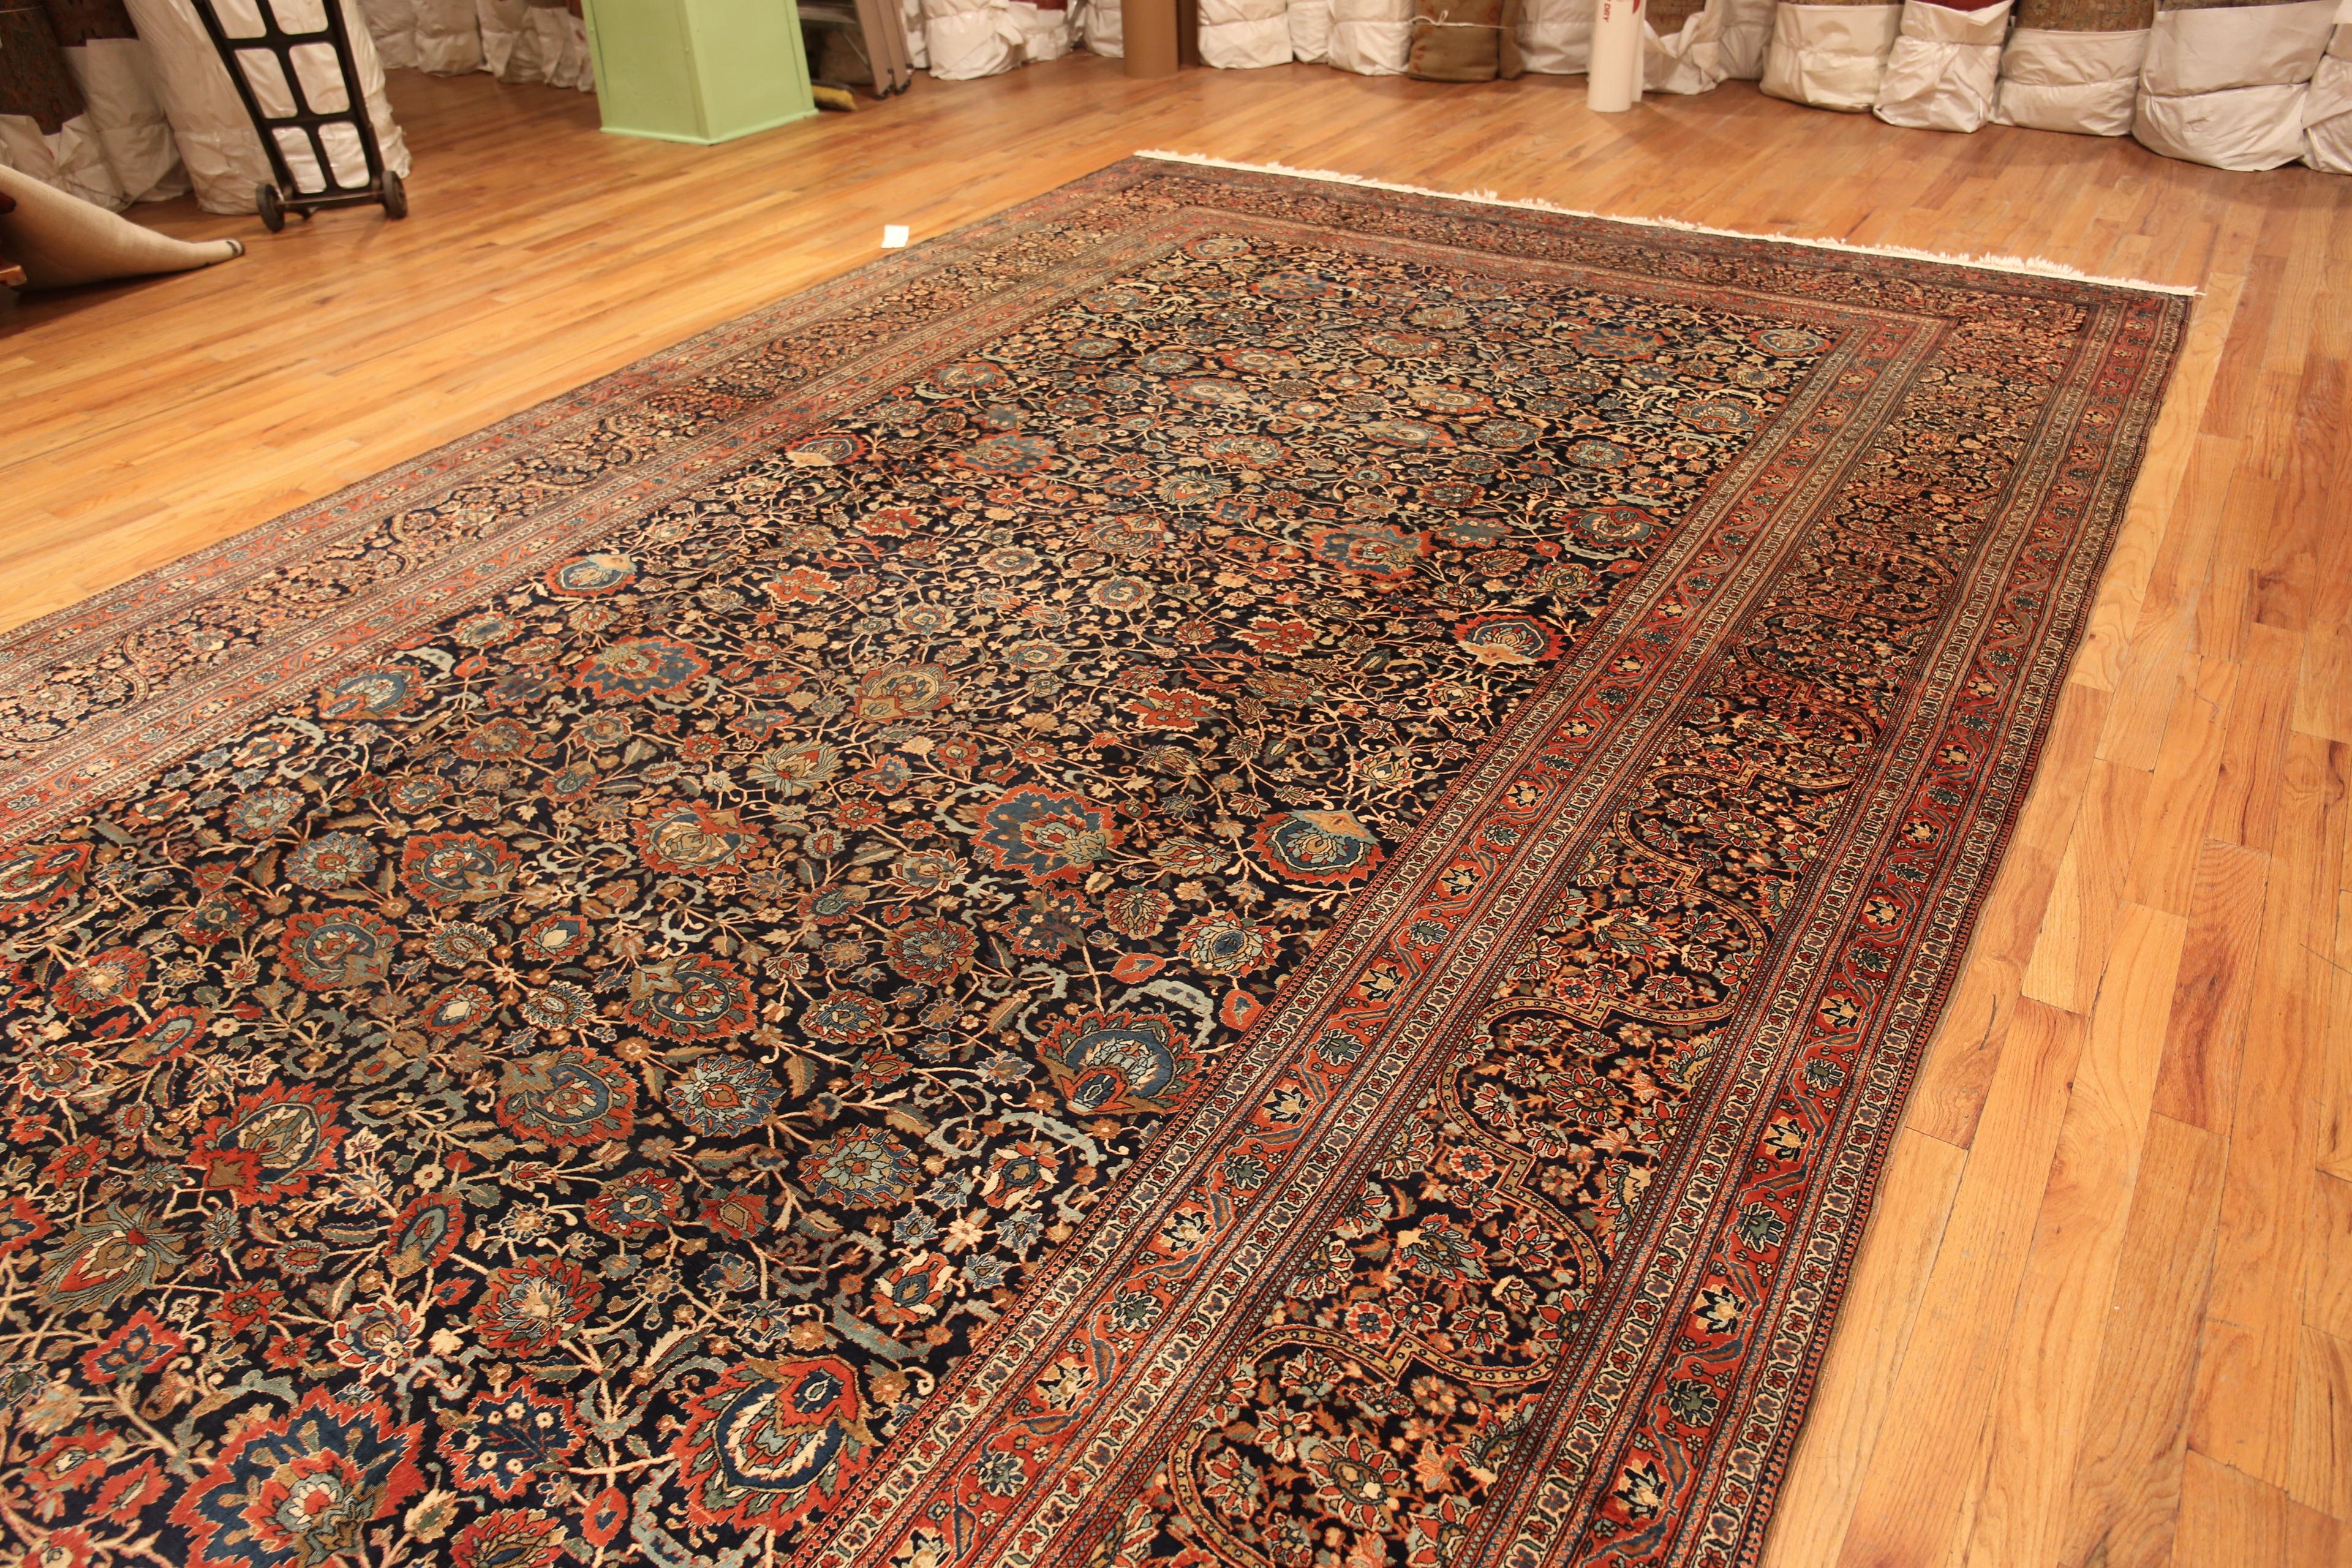 Großer antiker persischer Mohtasham Kashan-Teppich, Herkunftsland: Persien, CIRCA Datum: 1880. Größe: 11 ft x 18 ft 9 in (3,35 m x 5,71 m)

